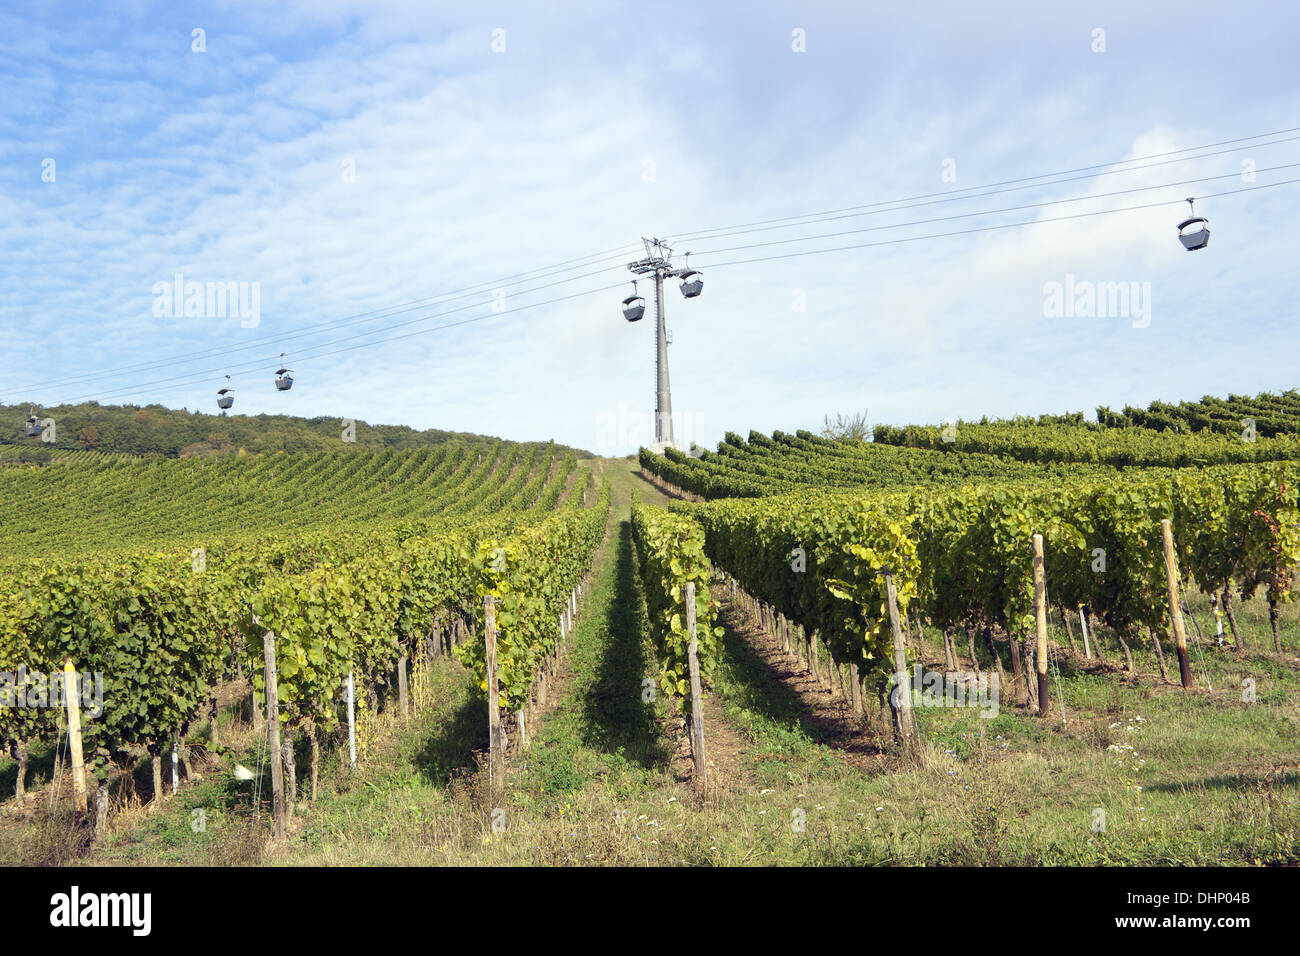 wine-growing area in Ruedesheim Stock Photo